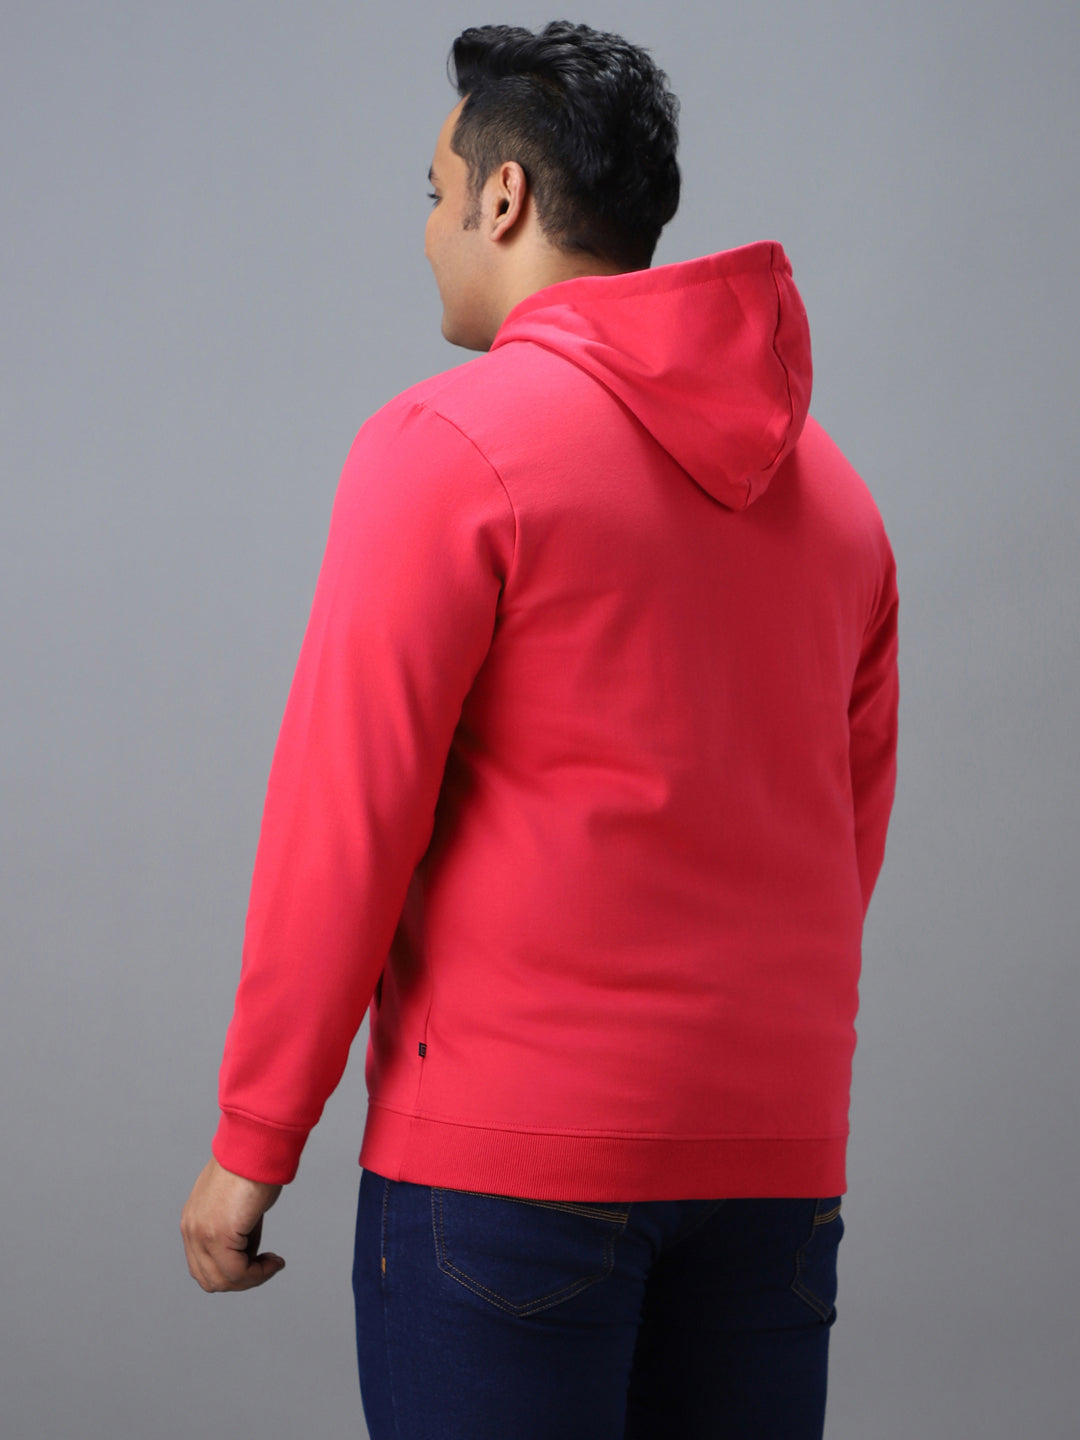 Plus Men's Pink Cotton Solid Zippered Hooded Neck Sweatshirt